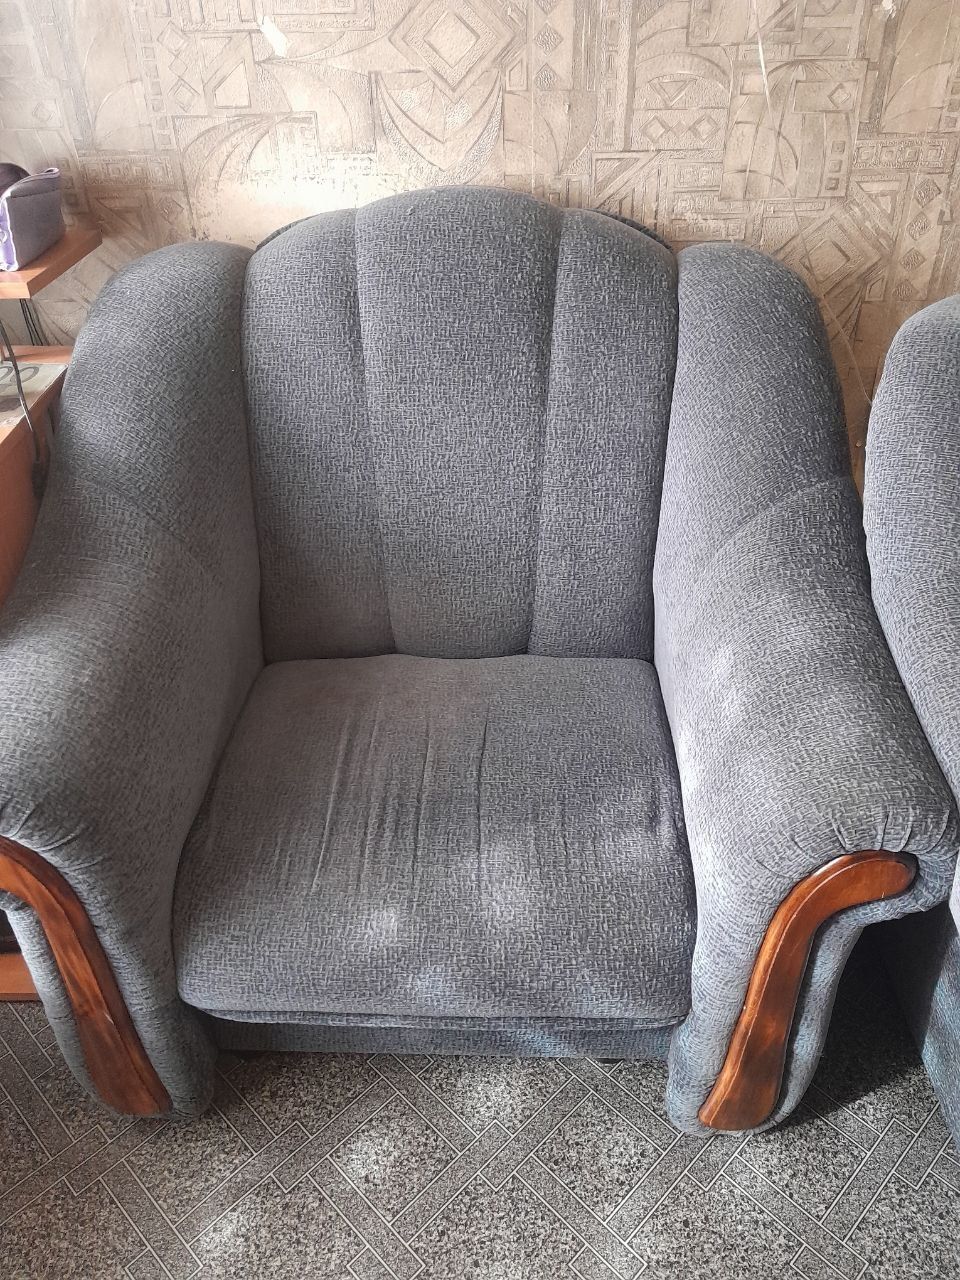 Продам диван (угловой) и кресло